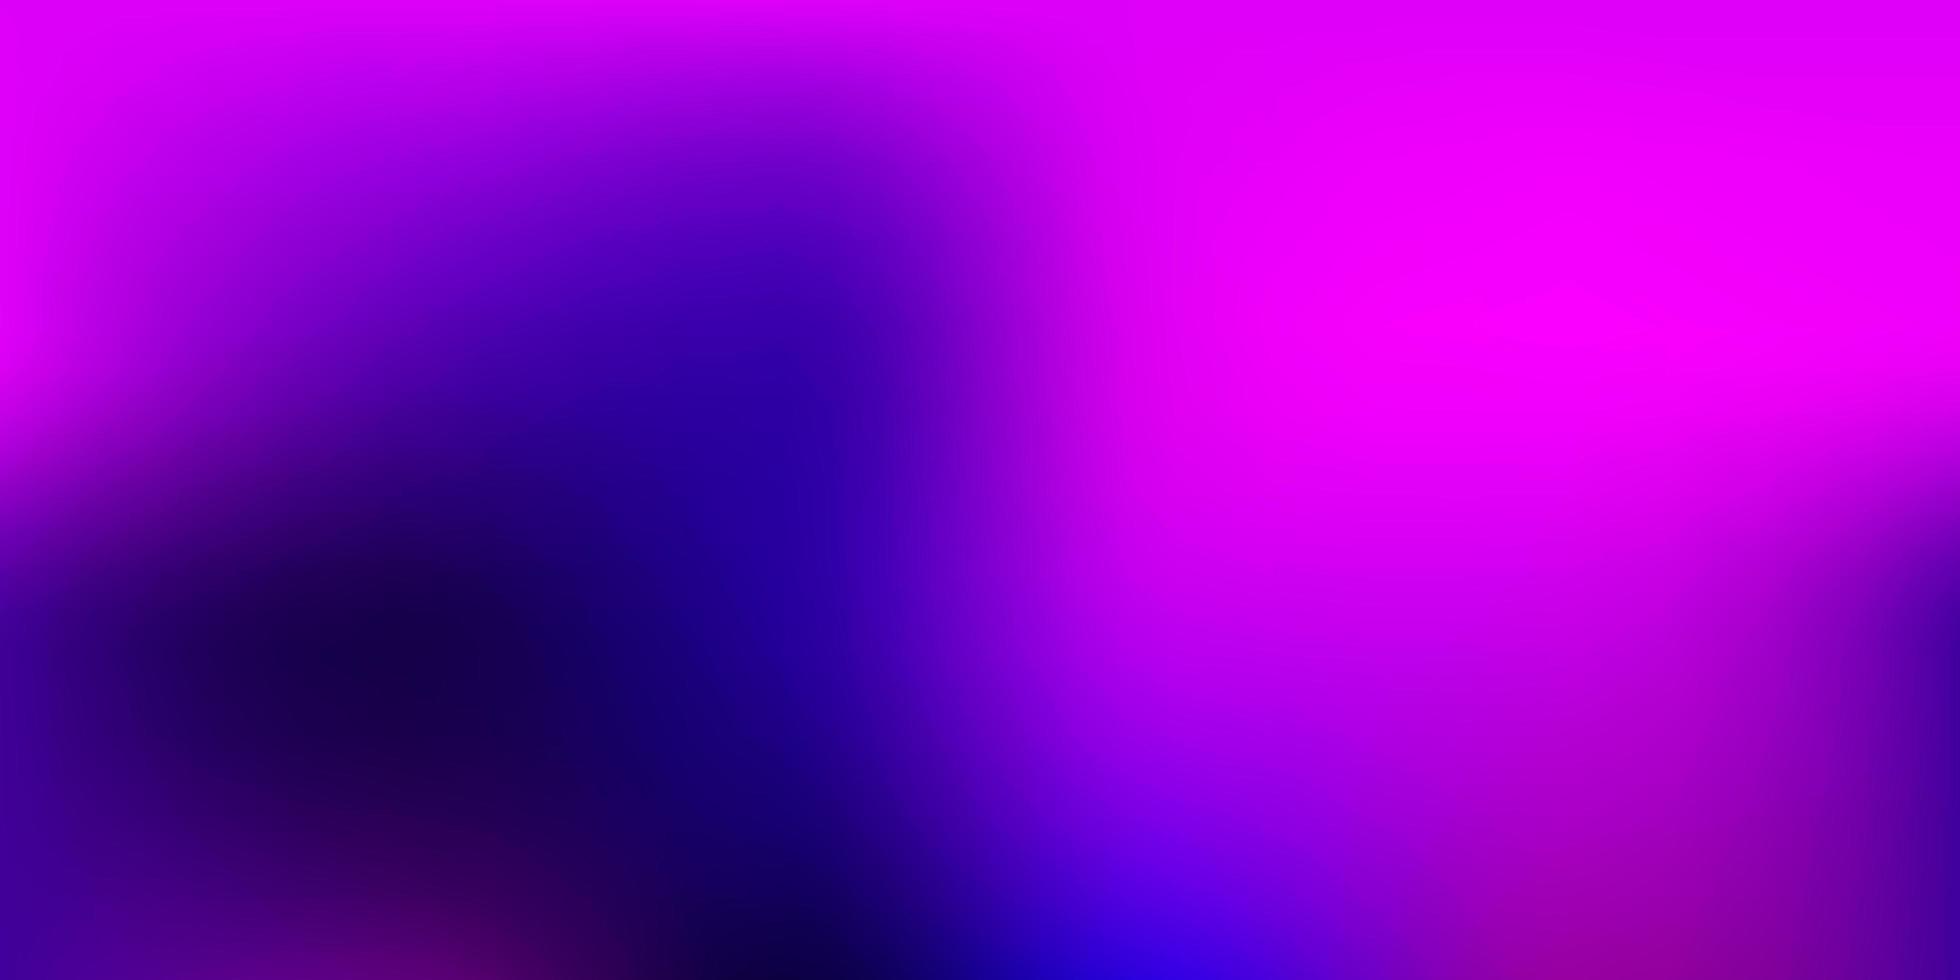 Dark Purple vector blur texture. 2765977 Vector Art at Vecteezy